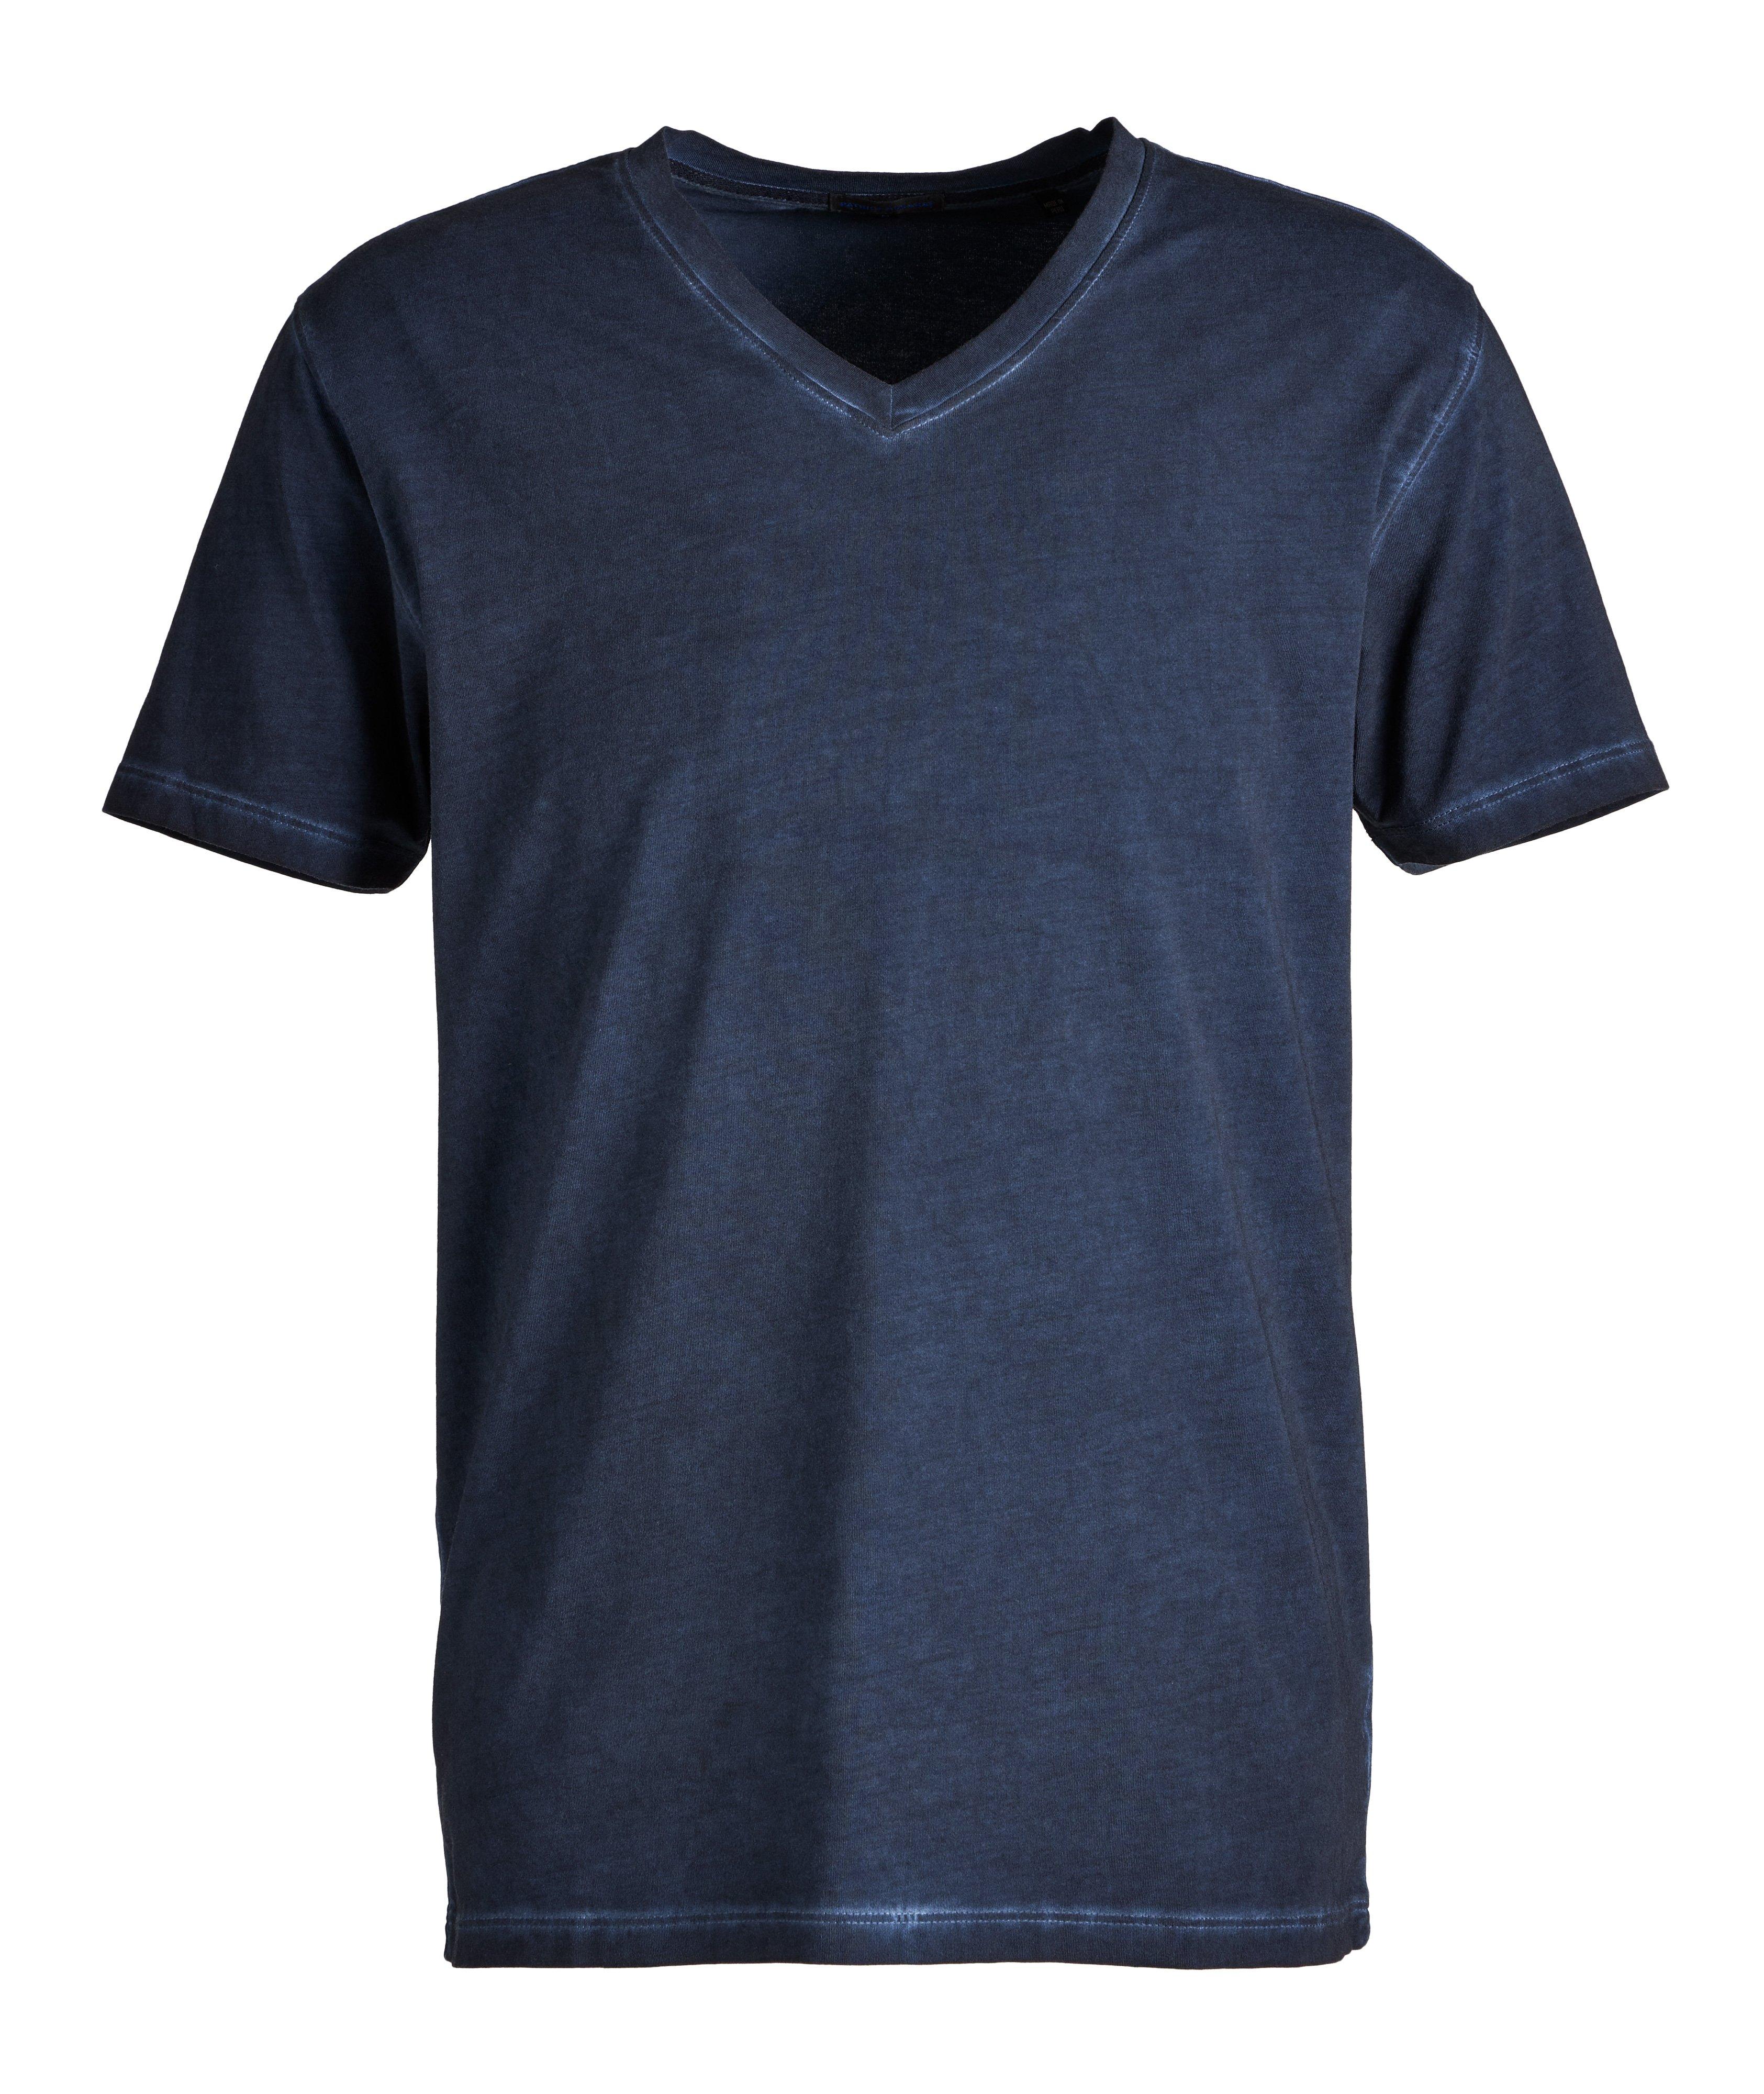 T-shirt en coton extensible à encolure en V image 0